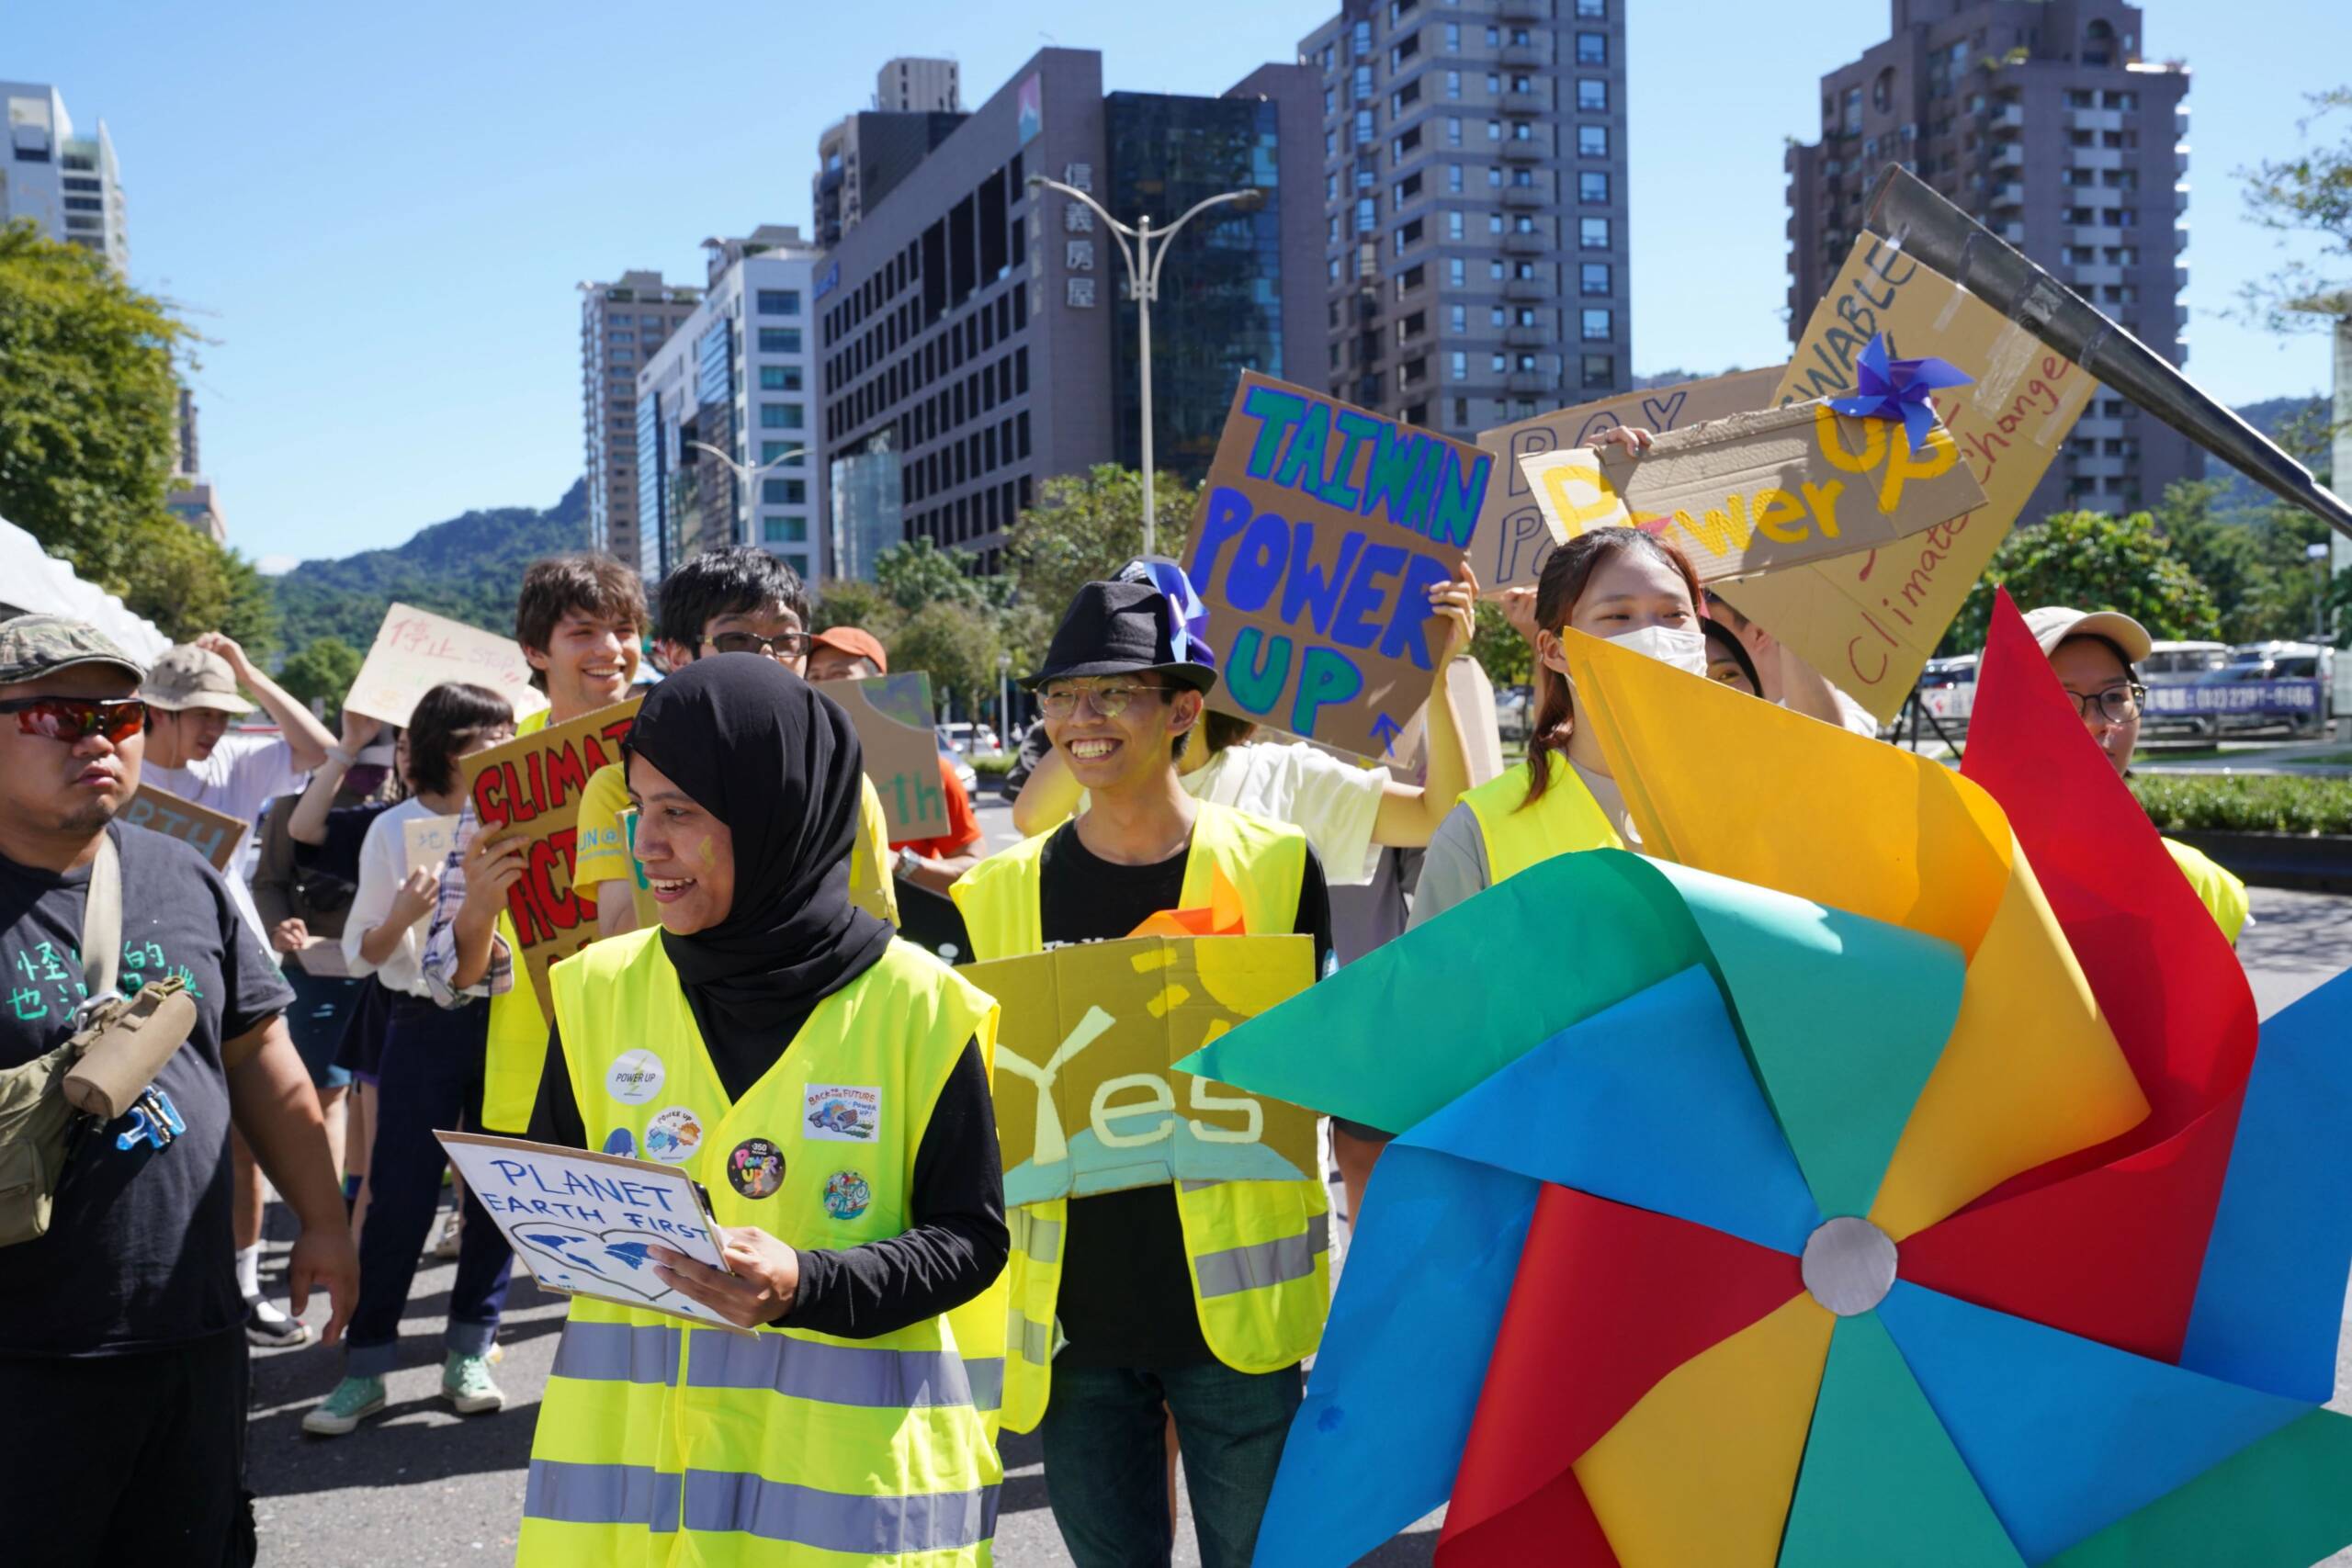 Taipei, Taiwán, 4 de noviembre: un desfile protagonizado por voluntarios y grupos juveniles recuerda la necesidad de una transición justa hacia las energías renovables. Créditos: Naomi Goddard